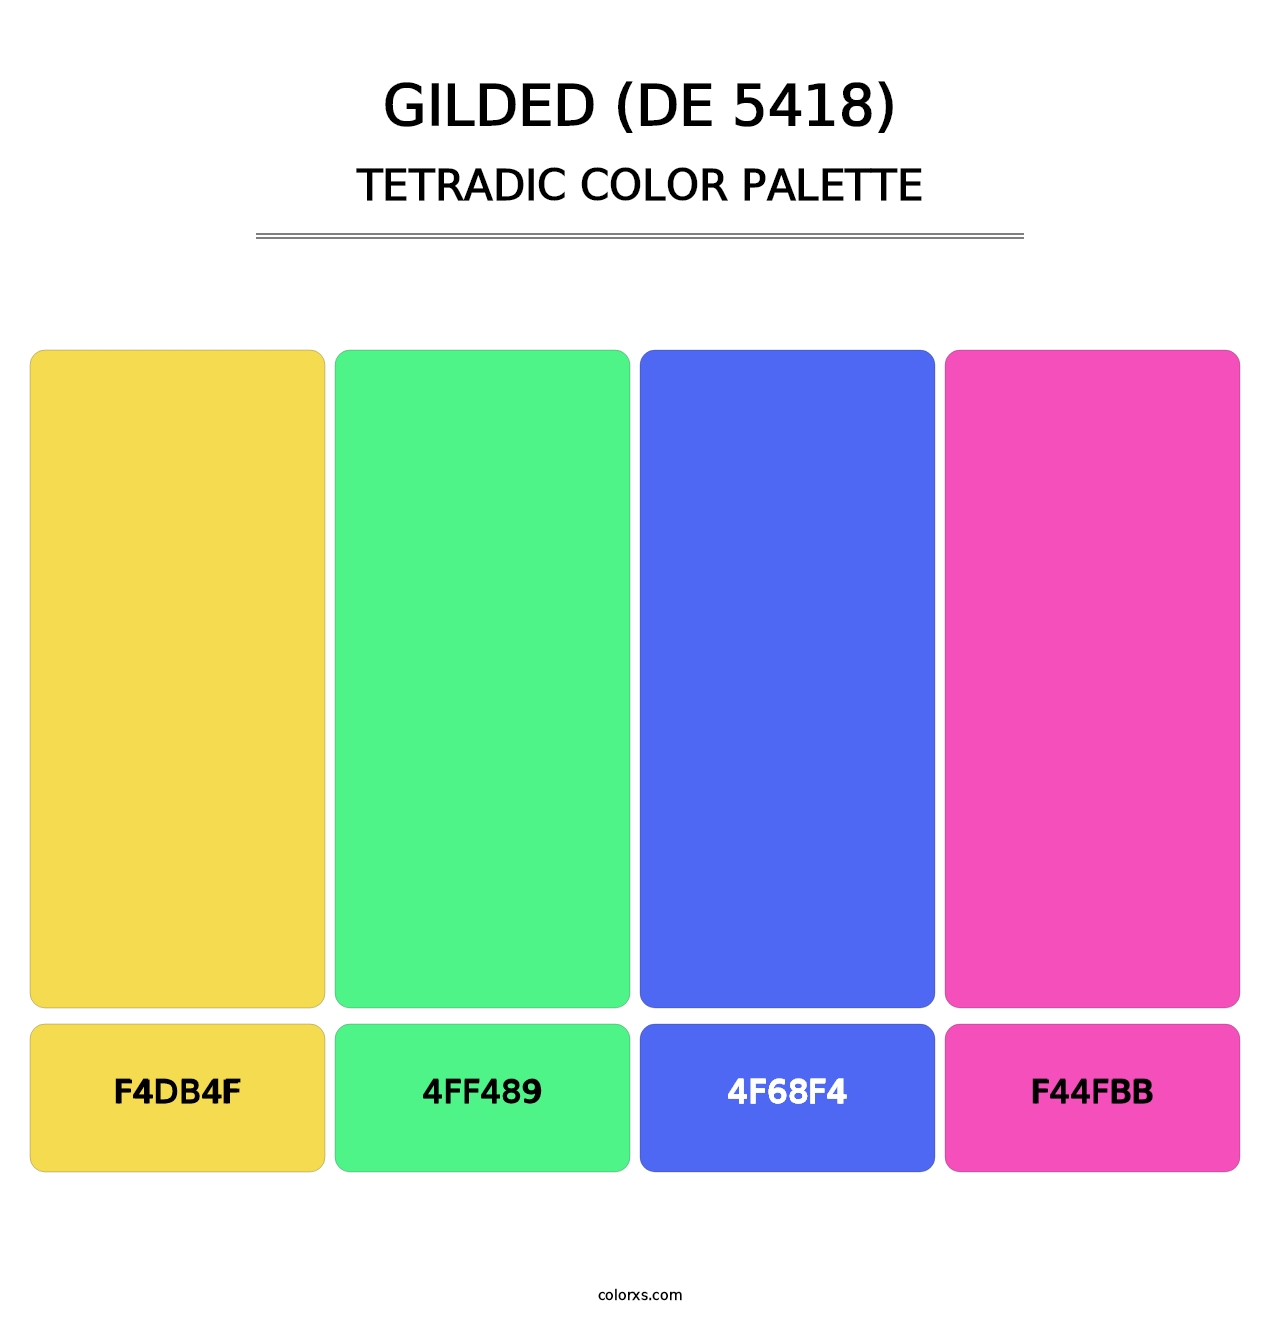 Gilded (DE 5418) - Tetradic Color Palette